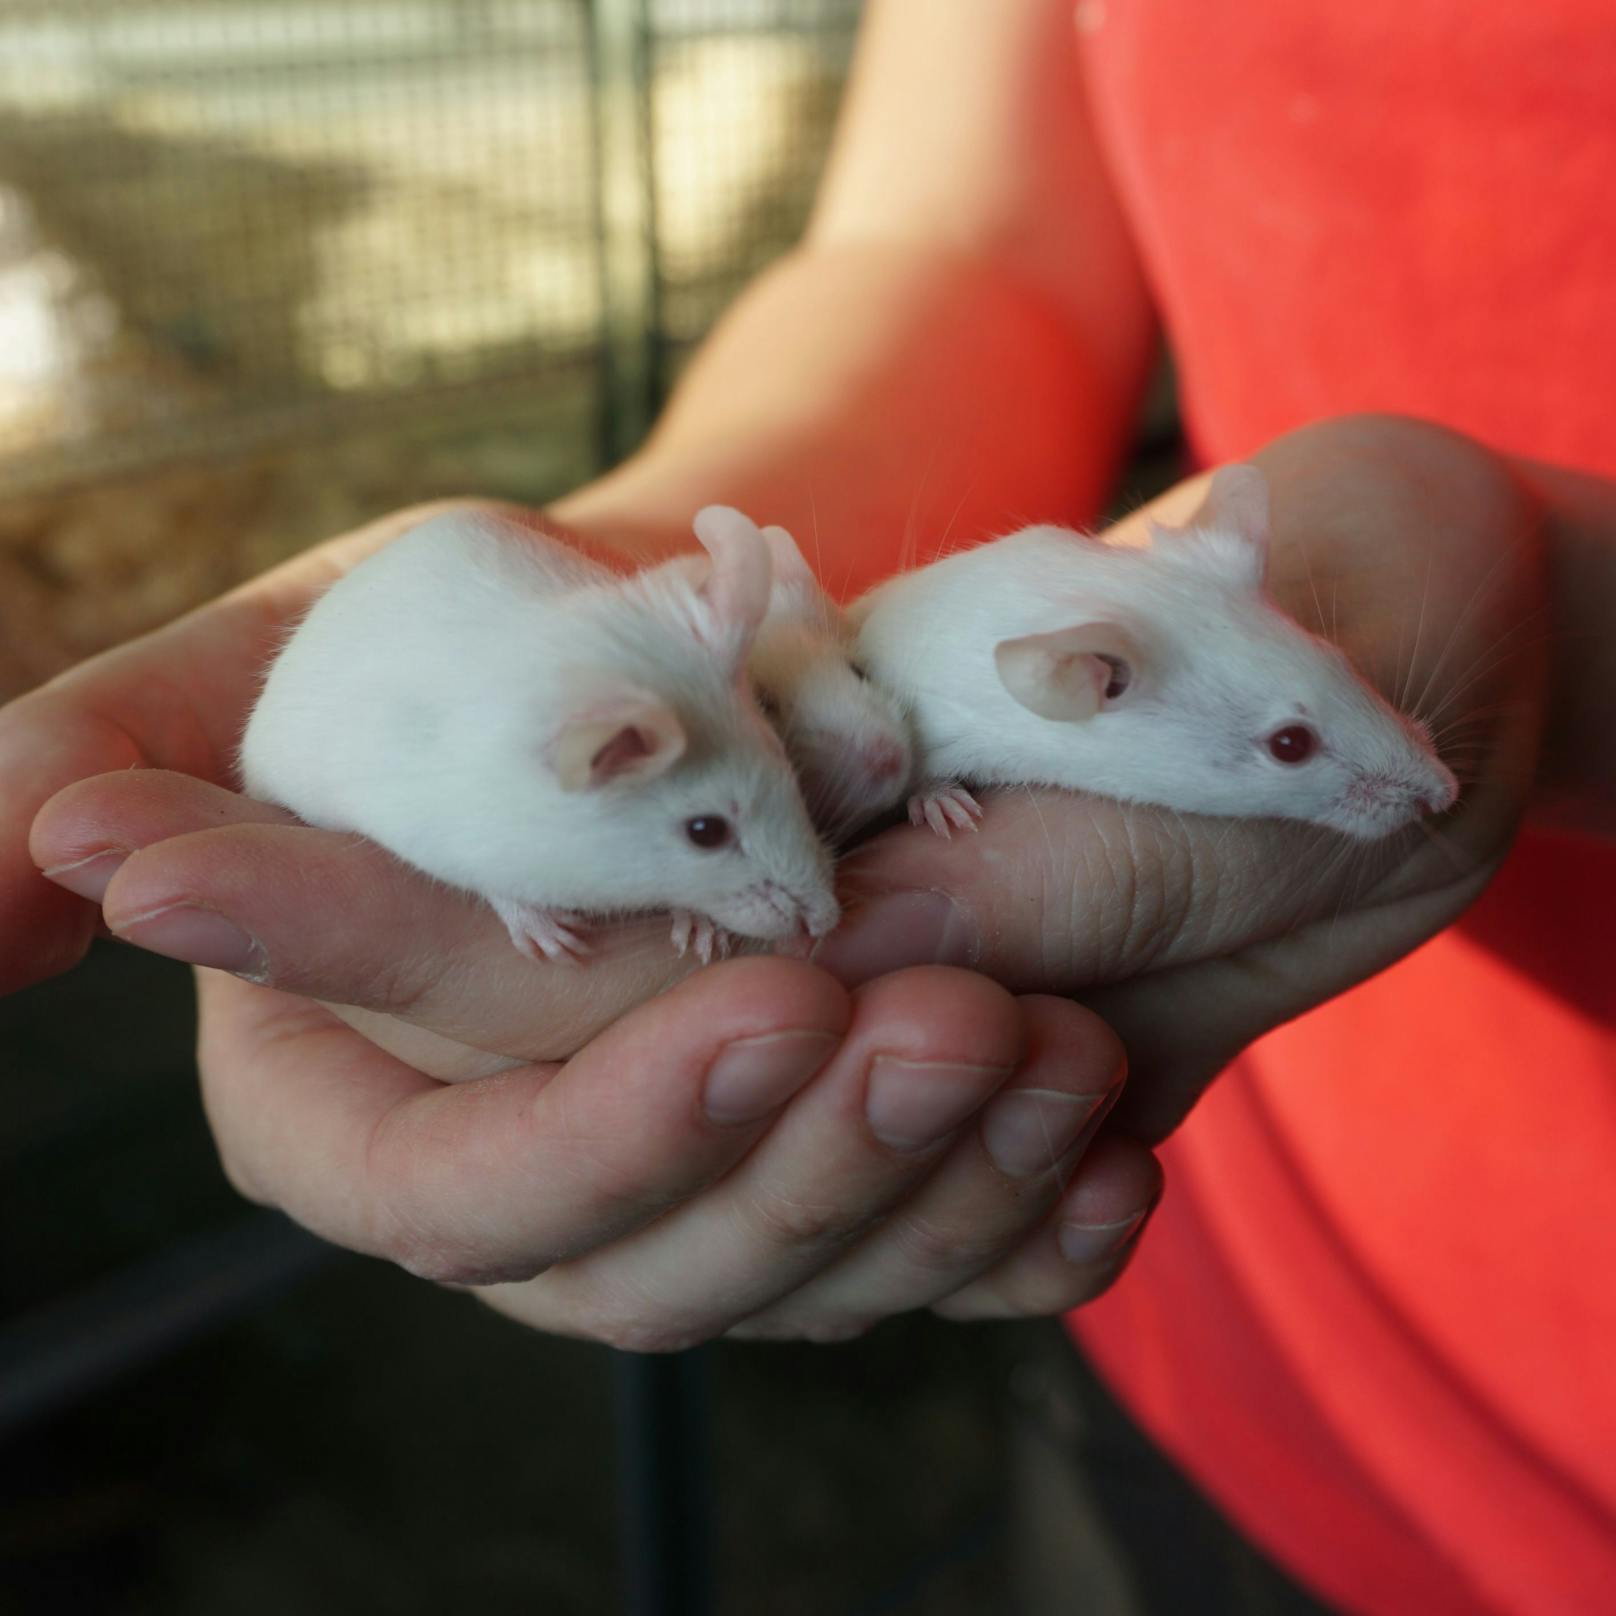 Als dämmerungs- und nachtaktive Tiere sind Mäuse für jüngere Kinder, die sich gerade tagsüber gerne mit dem Tier beschäftigen wollen, eher nicht geeignet.